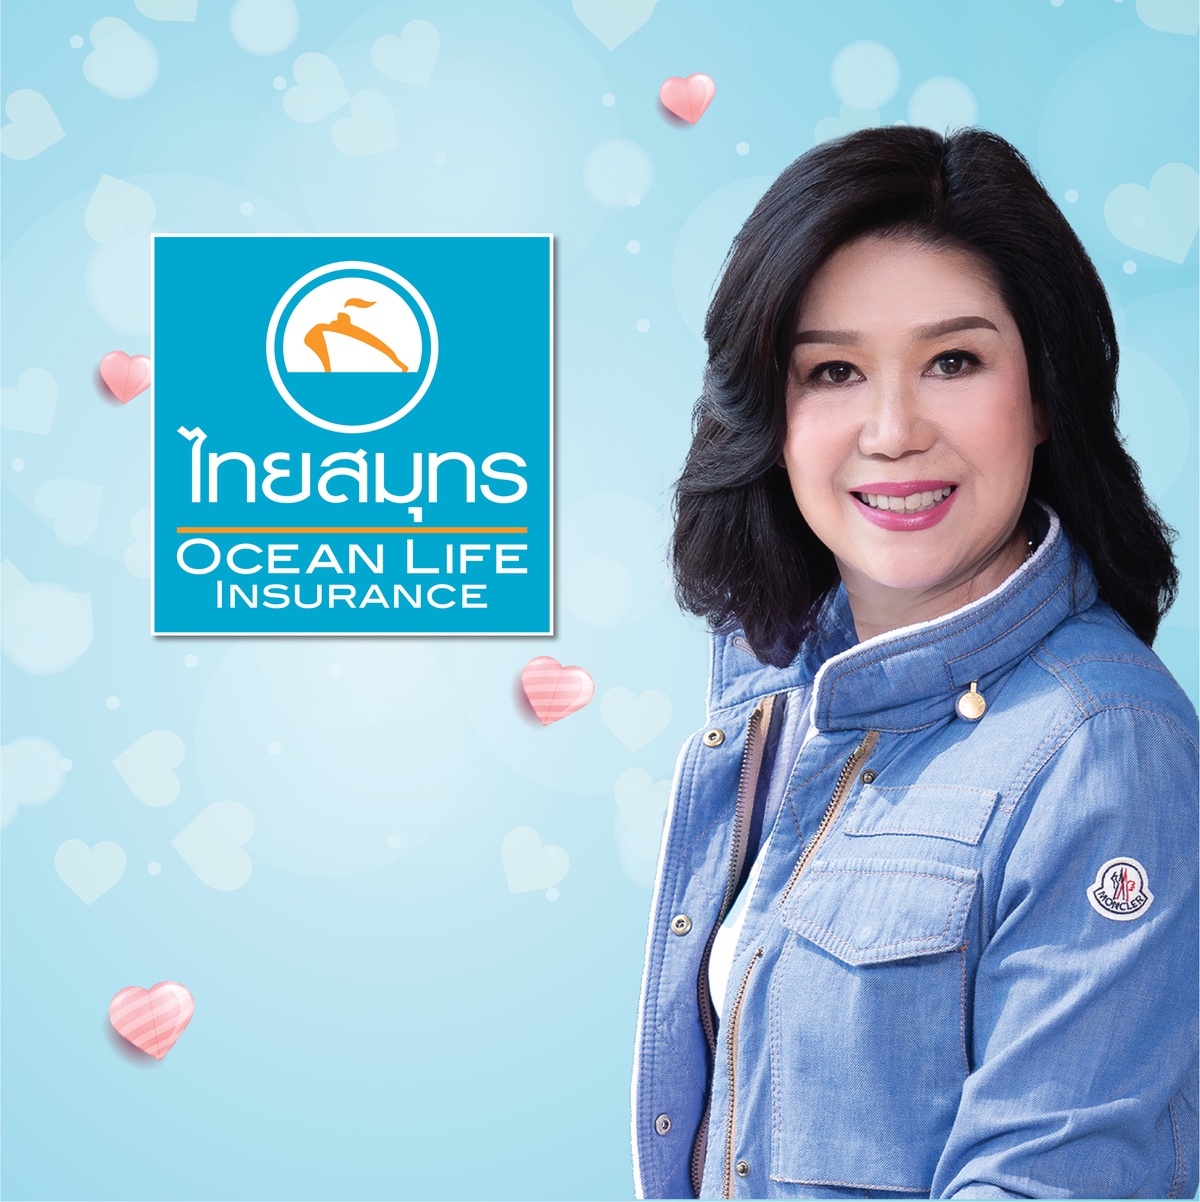 OCEAN LIFE ไทยสมุทร จัดแคมเปญสุดพิเศษ วาเลนไทน์นี้รักใครให้โอชิคุ้มครอง ชวนคนไทยส่งต่อความรักด้วยการประกัน.ต้อนรับเดือนแห่งความรัก